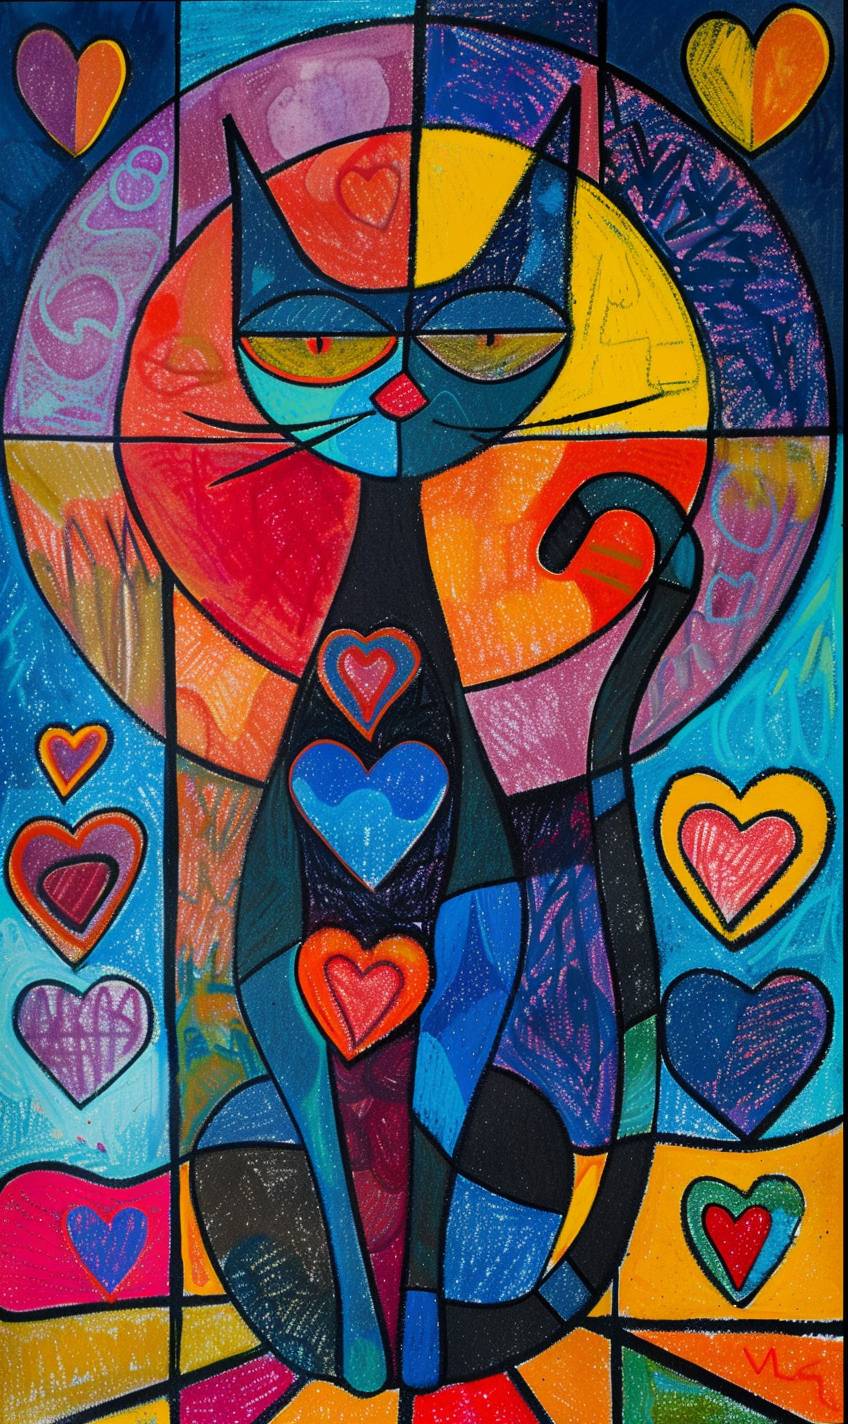 イツハック・ターカイのアートスタイルで、猫が登場するオイルパステルのホログラフィックシーンを用いたリソグラフ作品です。多くのハートのパターン、表と裏からの豊かな景色が描かれており、色ブロックはシンプルに表現され、超現実主義のスタイルで、明るくカラフルな色彩が主体です。絵画的でスケッチ風のフォーヴィスムで、マイラ・カールマンやマティス風のスタイルです。パラメータ情報はフィルタリングされています。